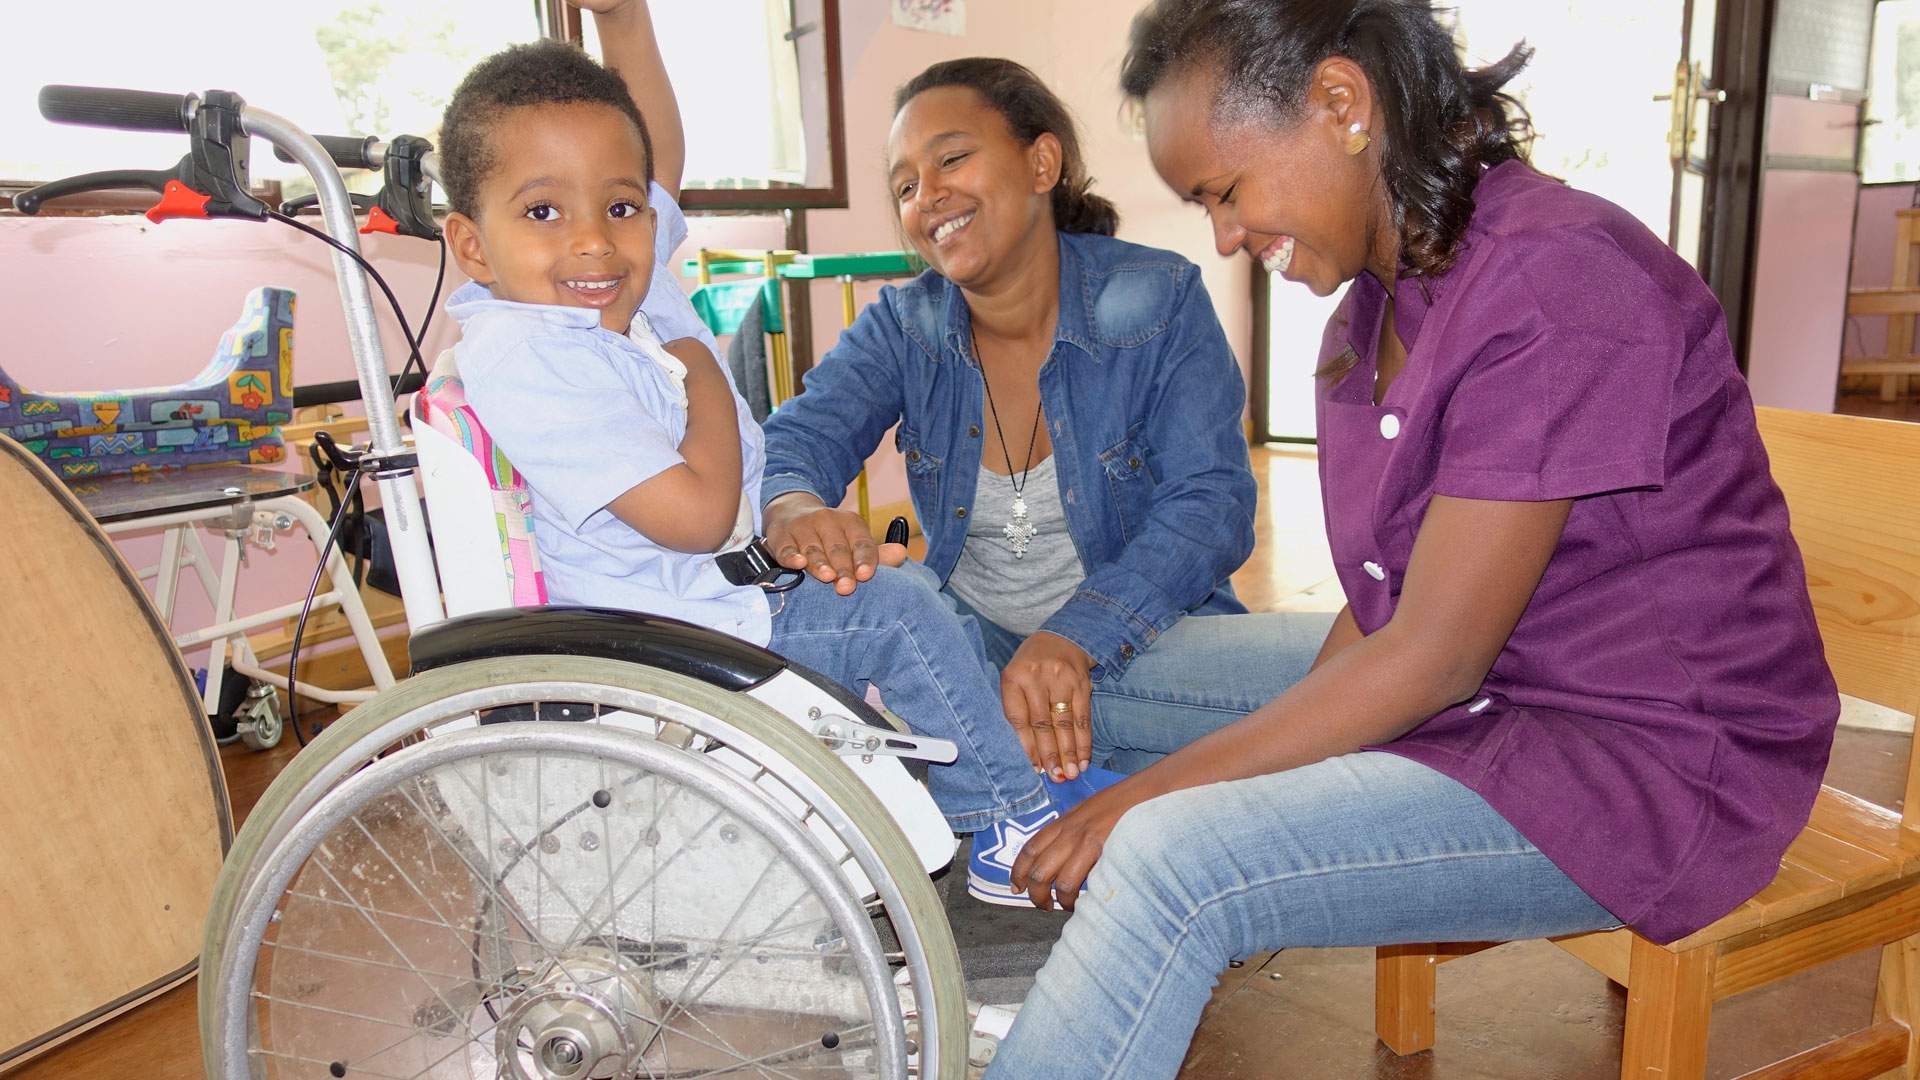  les fondations d utlite publique aident les personnes handicapees a acquerir davantage de mobilite 